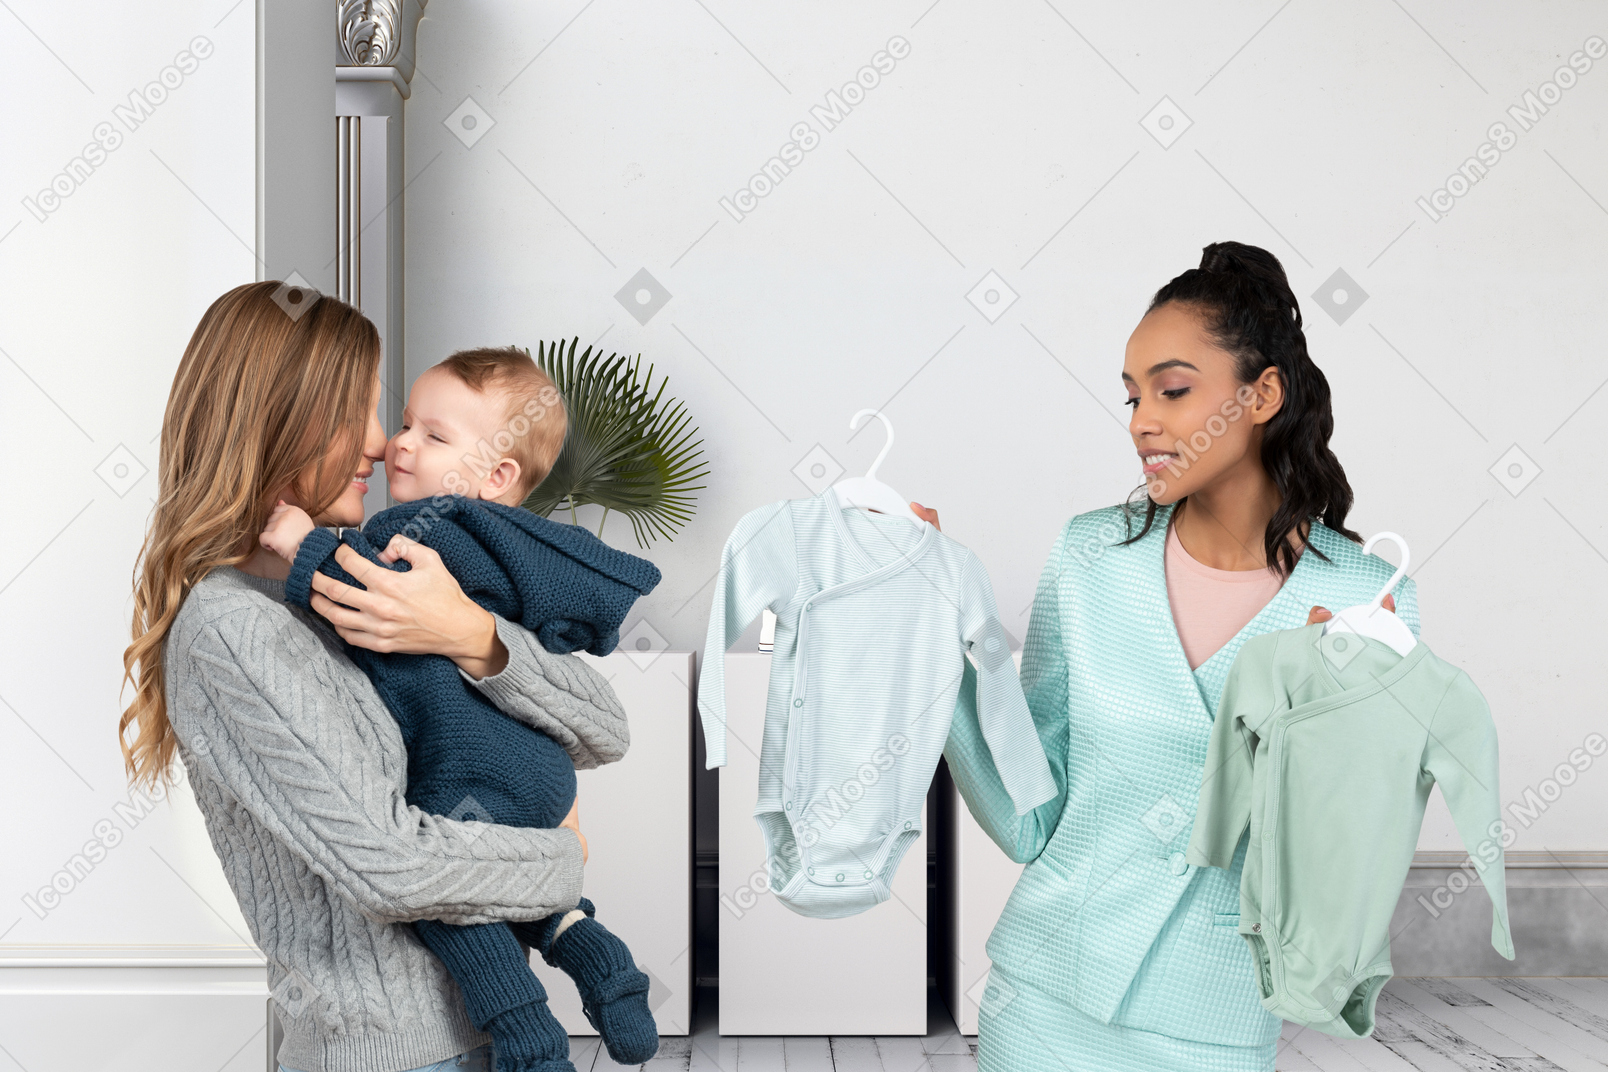 Frau mit baby, die kleidung kauft